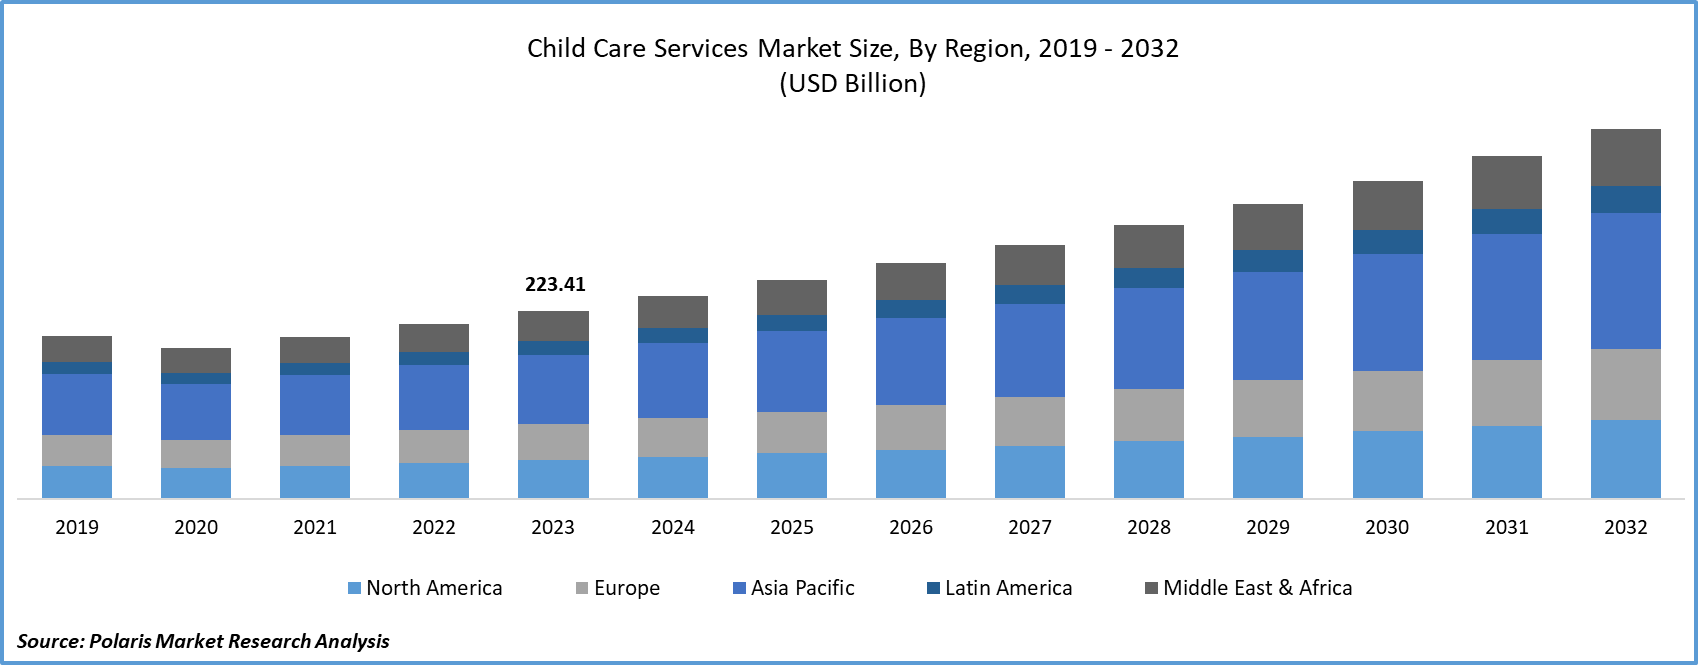 Child Care Services Market Size